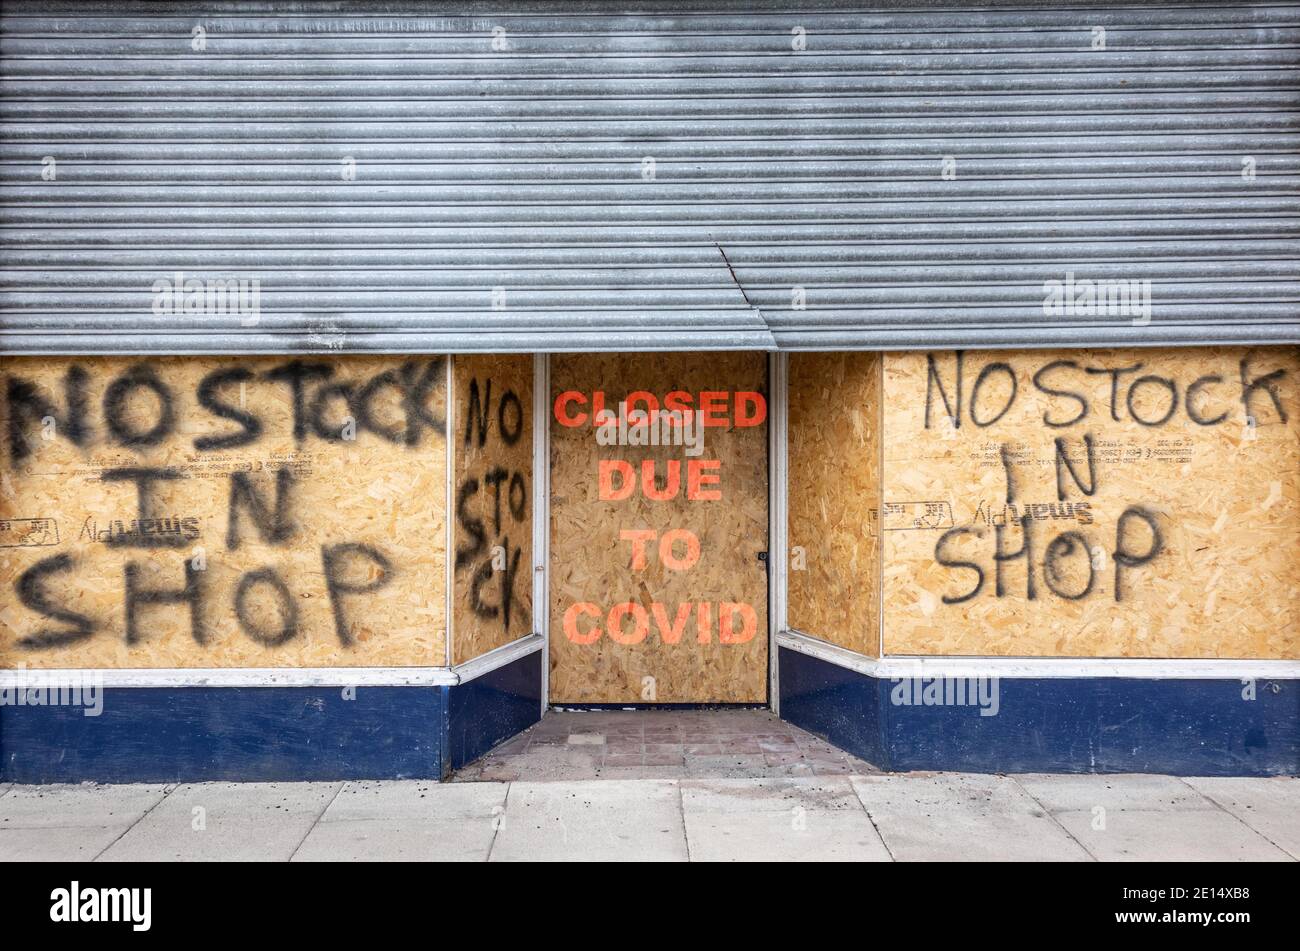 Nessun deposito nel cartello del negozio a bordo chiuso a causa del covid shop. Coronavirus, Covid 19 Retail, UK Economy Concept. Foto Stock